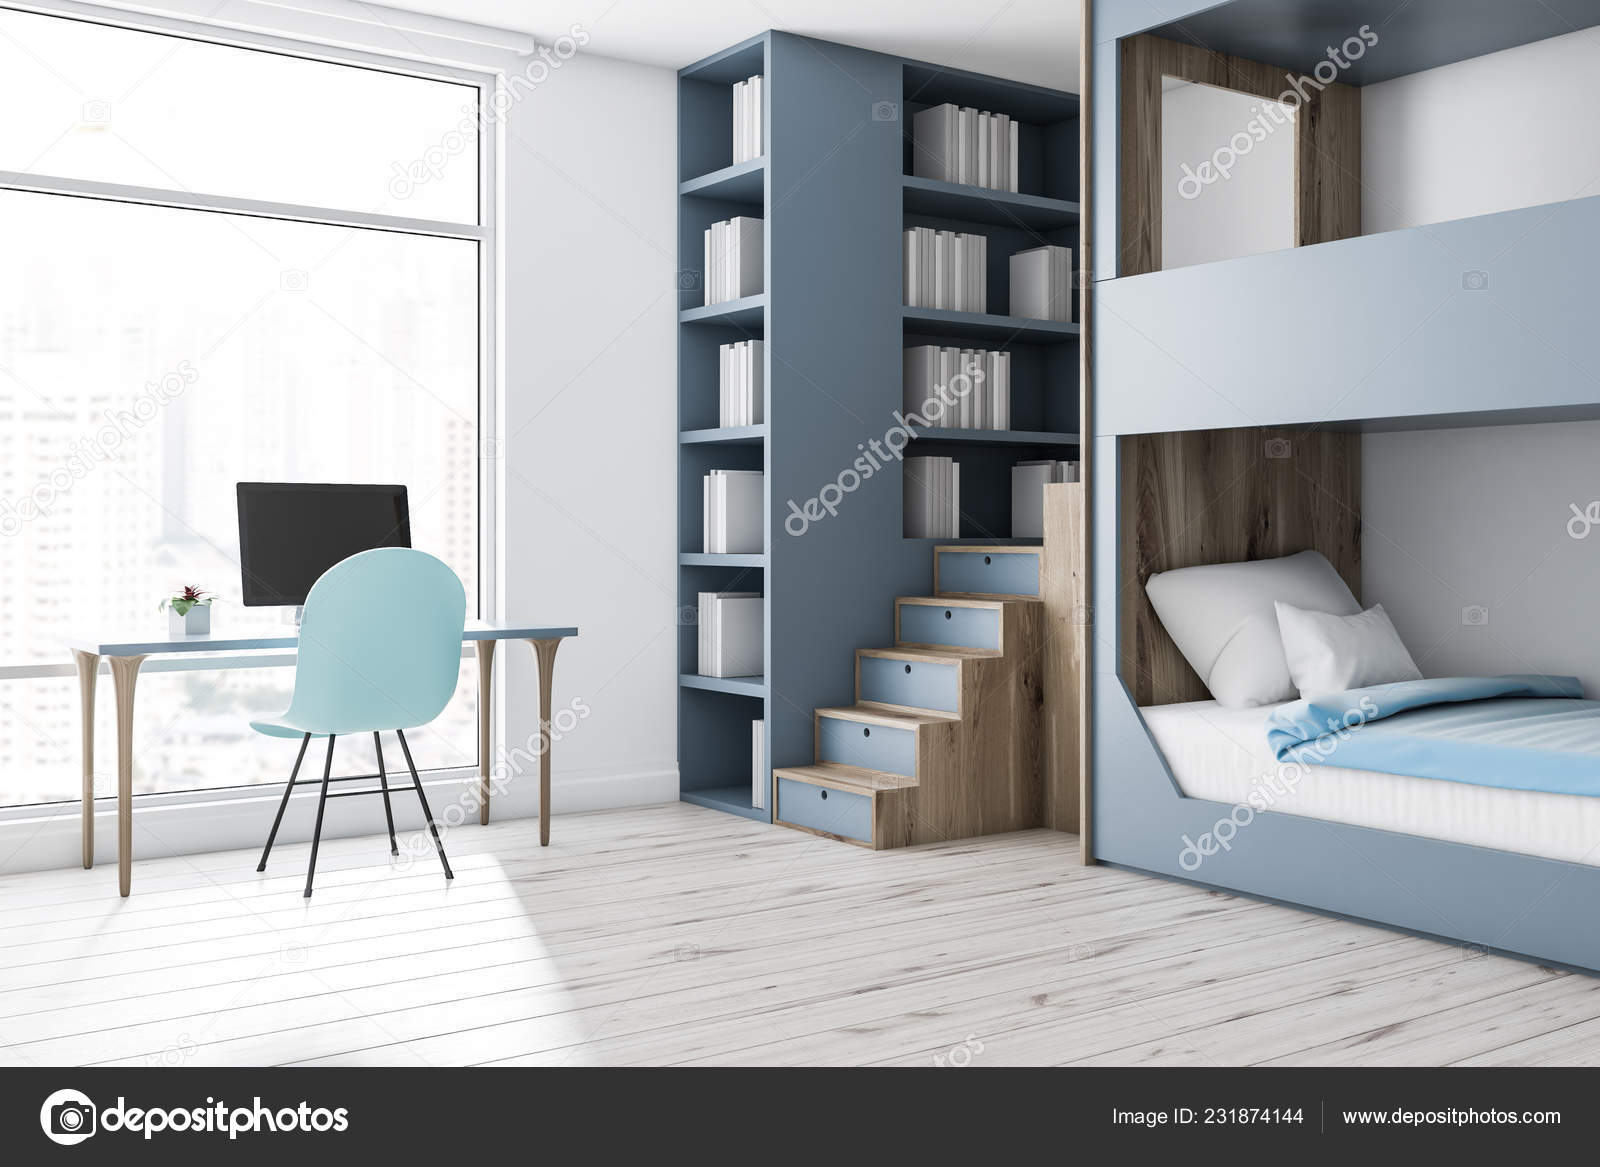 Wooden Floor Gray Bunk Stock, Light Blue Bunk Beds